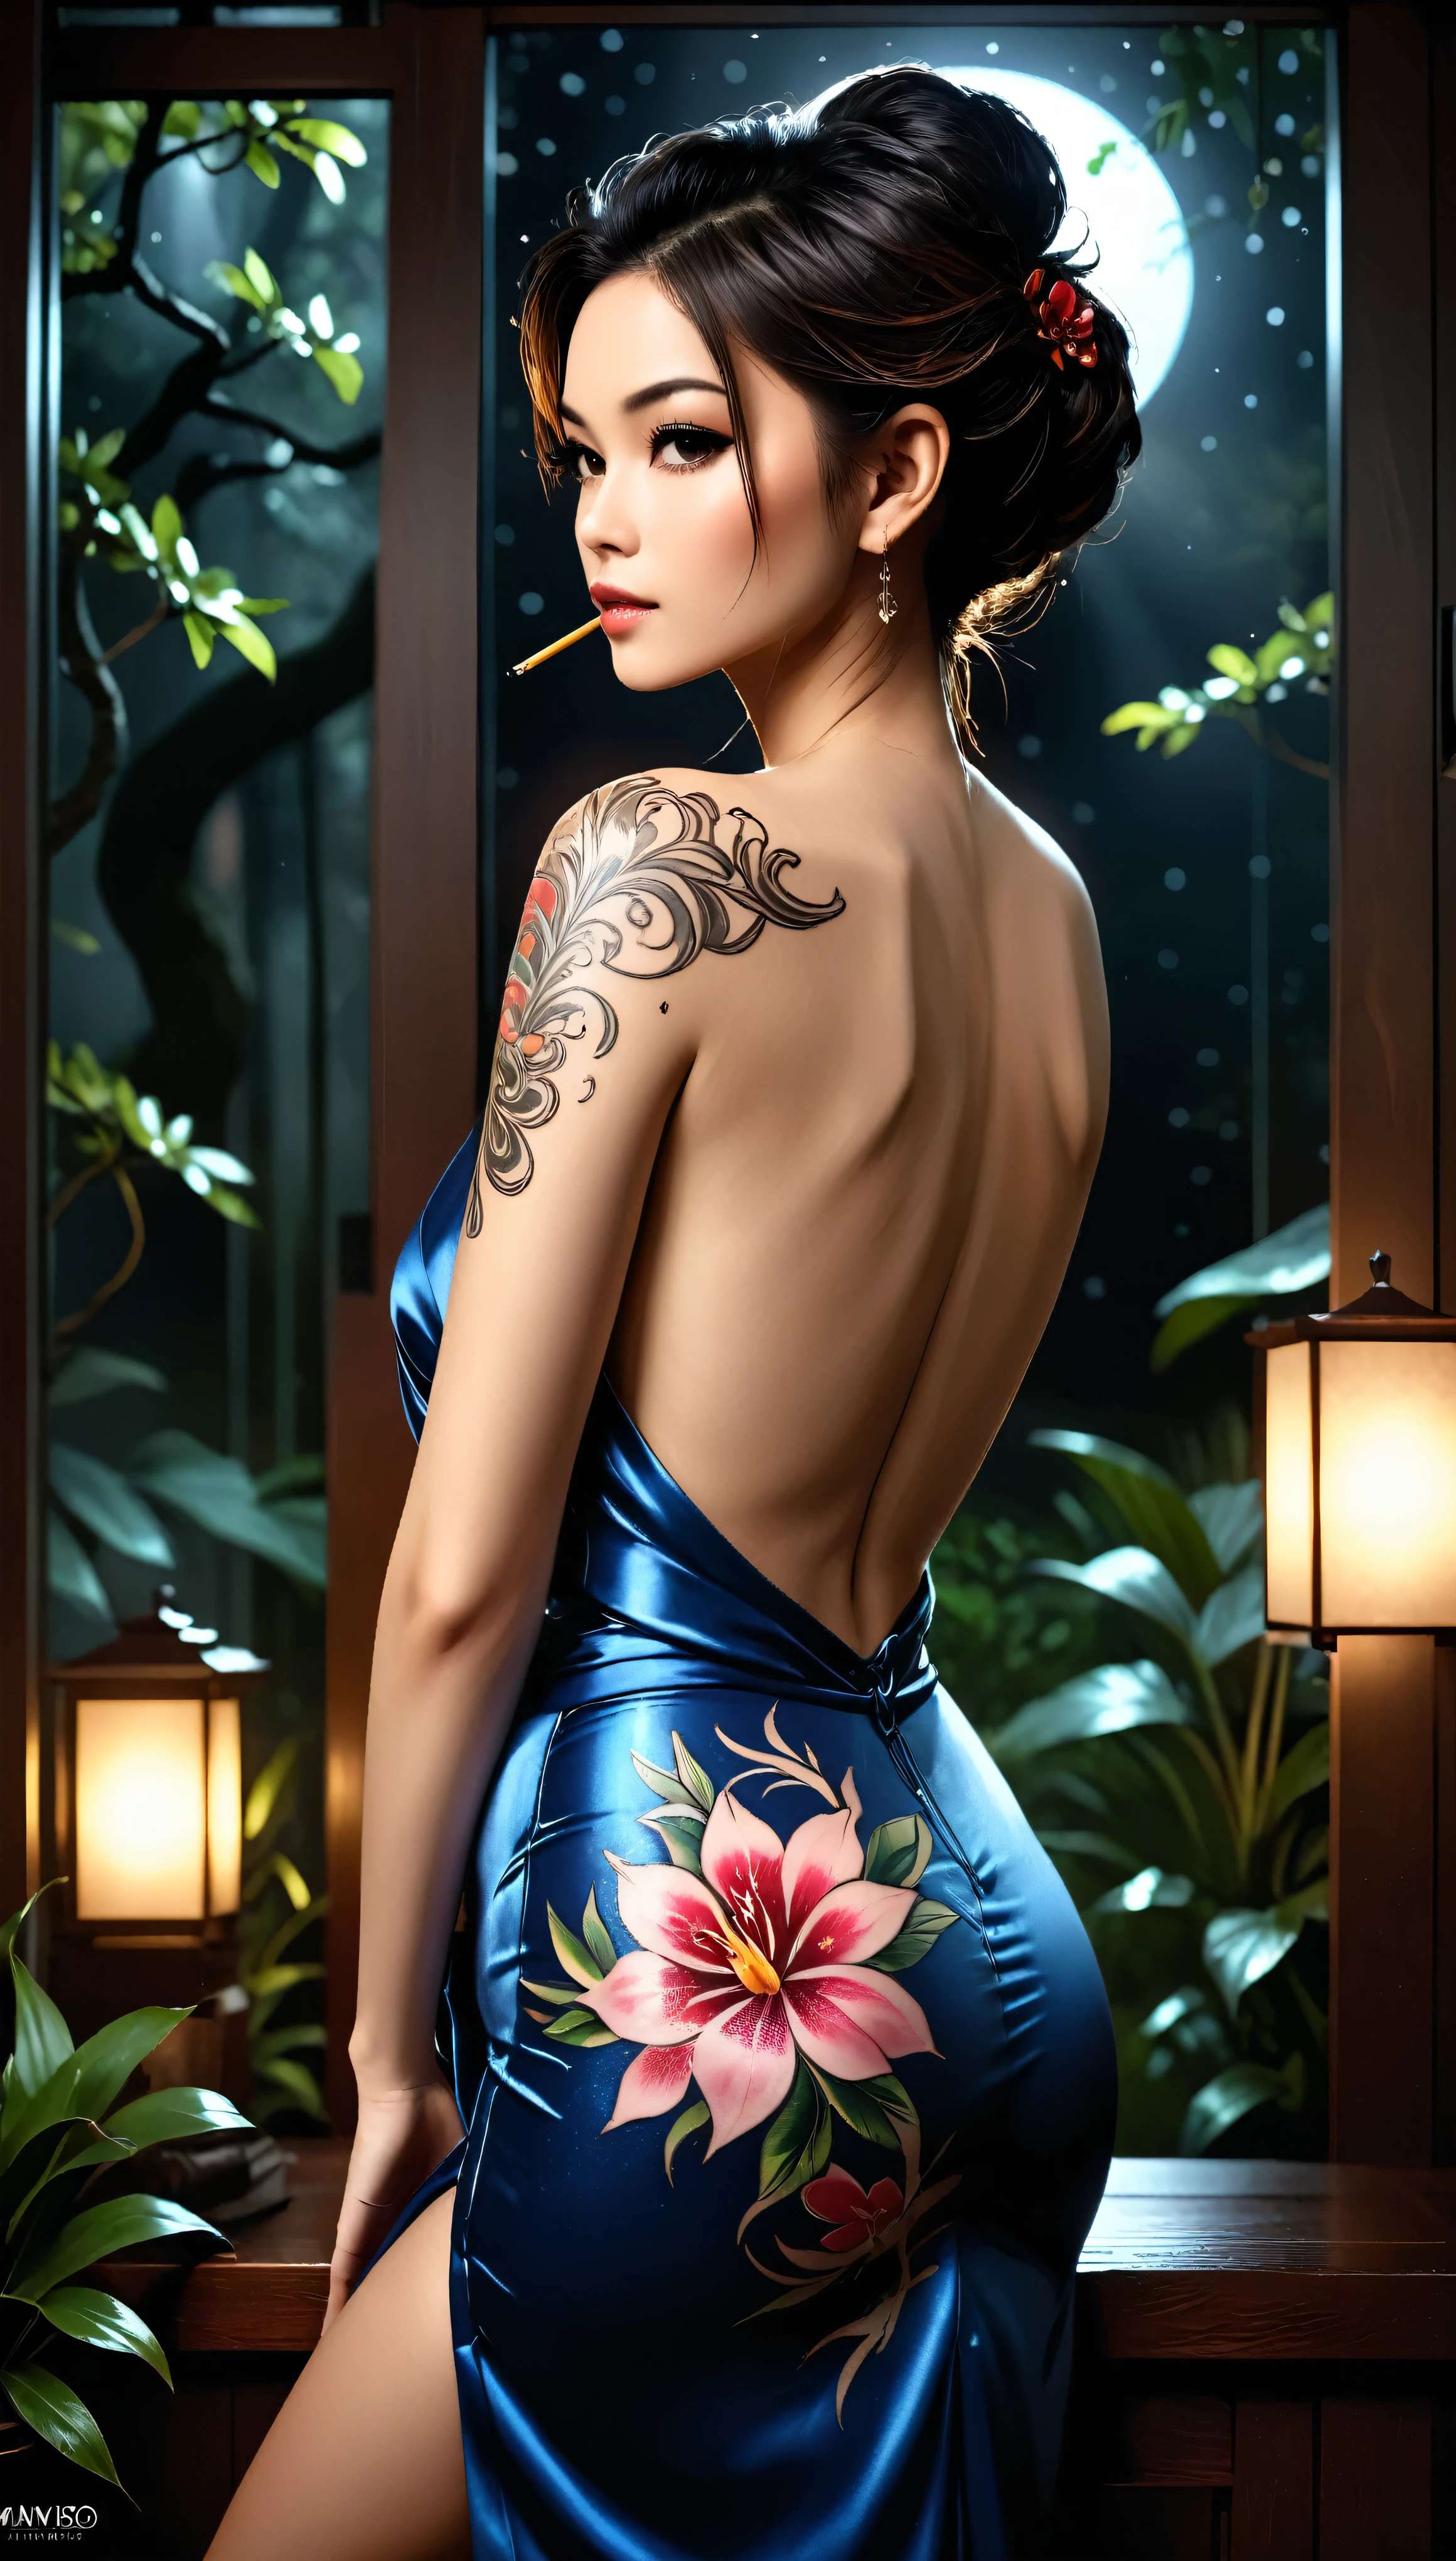 ((Meisterwerk in maximaler 16K-Auflösung):1.6),((soft_Farbe_Foto):1.5), ((ultra-detailliert):1.4),((Filmähnliche Standbilder und dynamische Winkel):1.3),((Blick von ihrem Rücken):1.3) | (macro Foto of stunning yakuza style tattoo in a very pretty Yakuza female back), (Sehr hübsche Yakuza-Frau), (Kimono mit offenem Rücken), ((ein atemberaubendes Tattoo im Yakuza-Stil auf ihrem Rücken):1.3), (Konzentriere dich auf das Tattoo), (Makro-Objektiv), (japanischer Garten), (schwaches Nachtlicht), (tyndalle effect), (Dark Beauty-Atmosphäre), (shimmer), (geheimnisvolles Ambiente), (visuelles Erlebnis),(Realismus), (Realistisch),preisgekrönte Grafiken, dunkler Schuss, Filmkorn, extremely Detailed, Digital Art, RTX, unwirkliche Engine, Szenenkonzept Anti-Blend-Effekt, Alles mit scharfem Fokus aufgenommen. | Rendered in Ultra-high definition with UHD and retina quality, this masterpiece ensures anatomical correctness and textured skin with super Detail. Mit Fokus auf hohe Qualität und Genauigkeit, Diese preisgekrönte Darstellung fängt jede Nuance in atemberaubender 16k-Auflösung ein, lässt den Betrachter in die lebensechte Darstellung eintauchen. | ((perfekt_Komposition, perfekt_Design, perfekt_Layout, perfekt_Detail, Ultra_Detailed)), ((erweitern_alle, Fix_alles)), Mehr Details, erweitern.